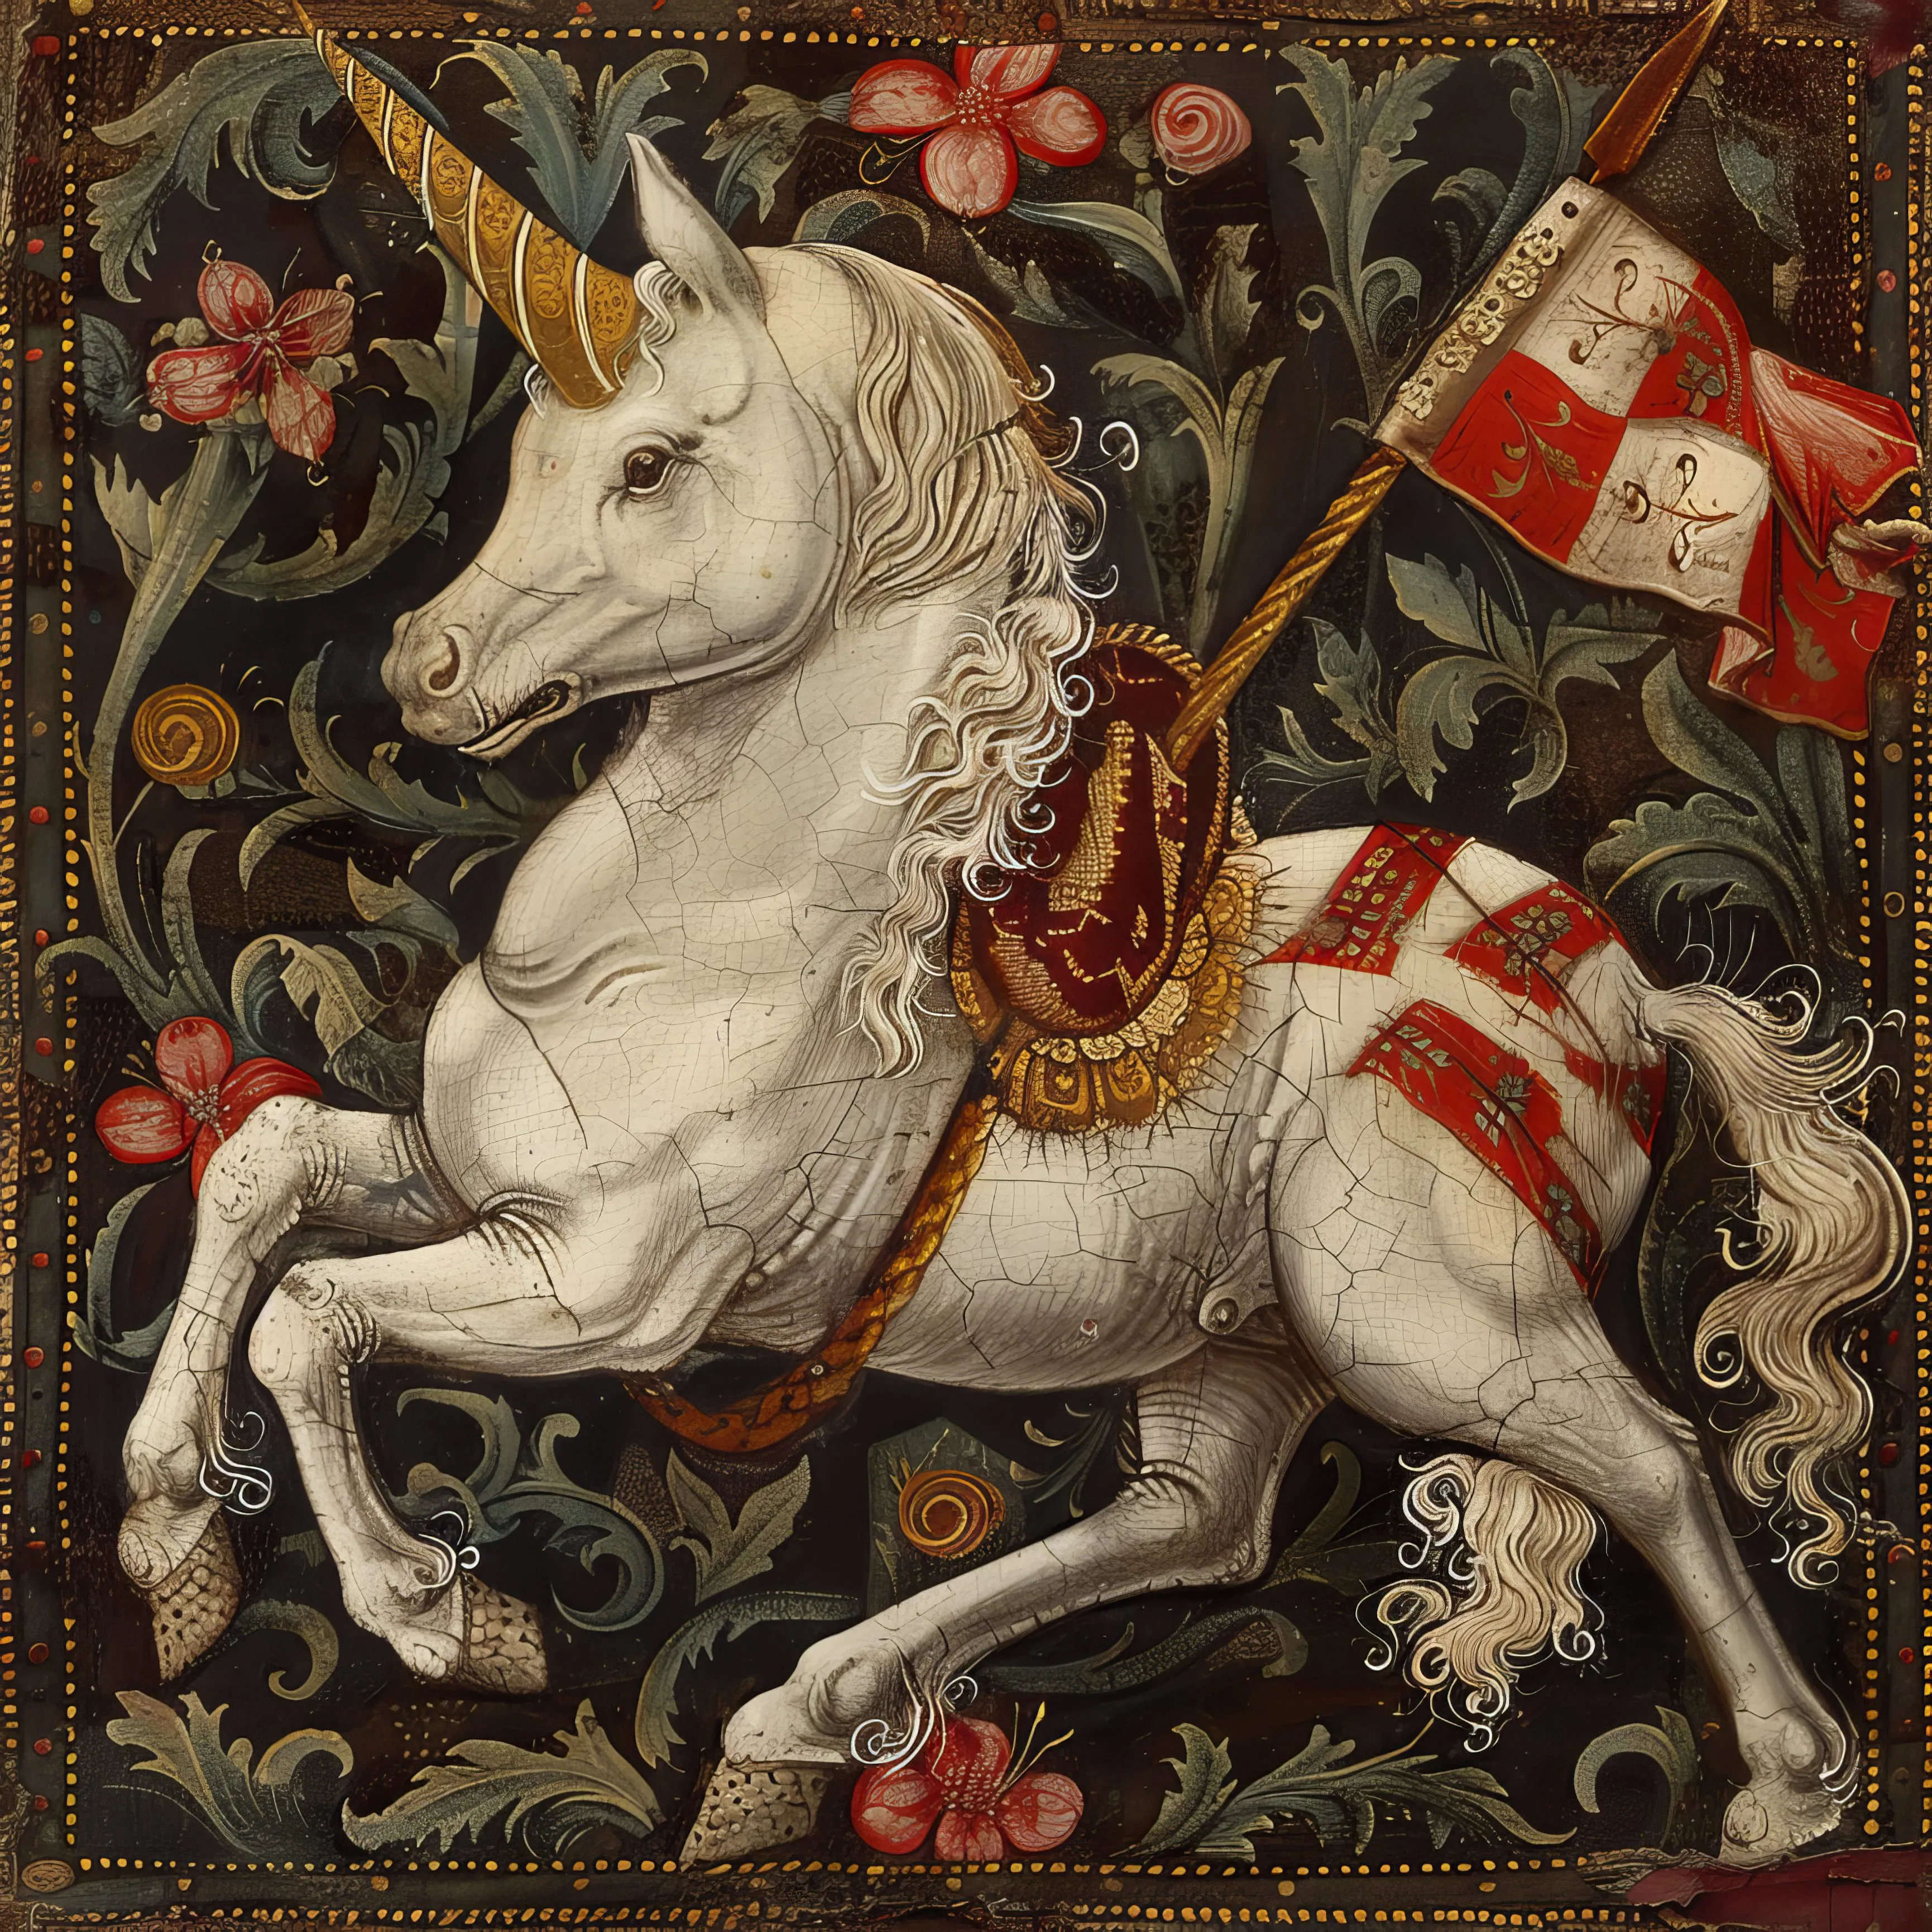 Rappresentazione medievale di unicorni